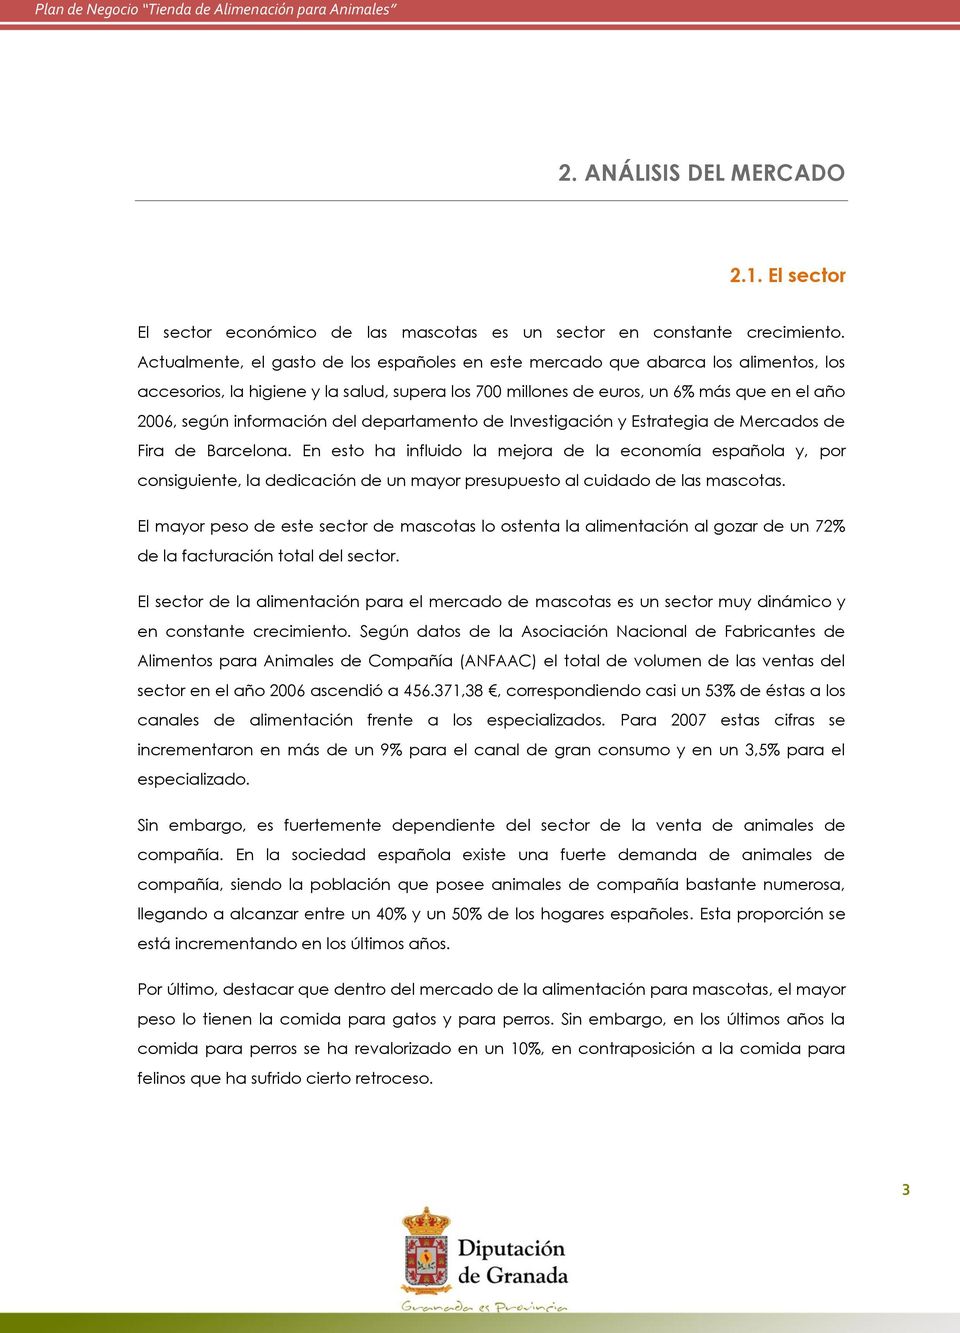 información del departamento de Investigación y Estrategia de Mercados de Fira de Barcelona.